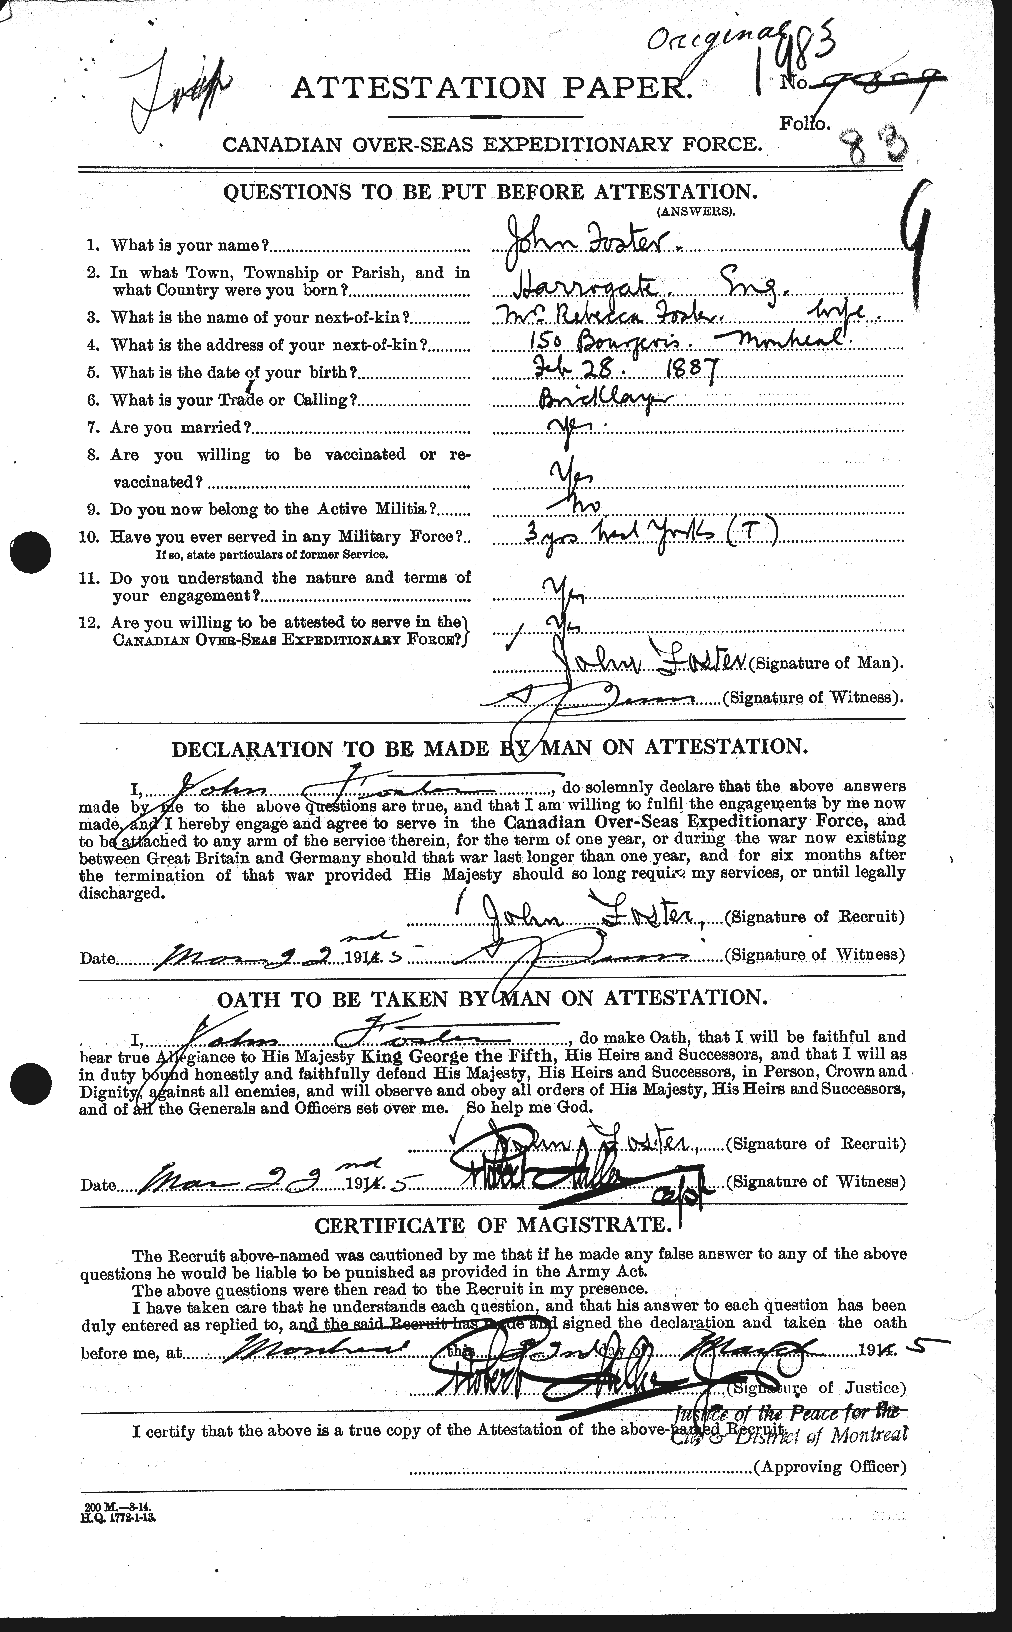 Dossiers du Personnel de la Première Guerre mondiale - CEC 333333a